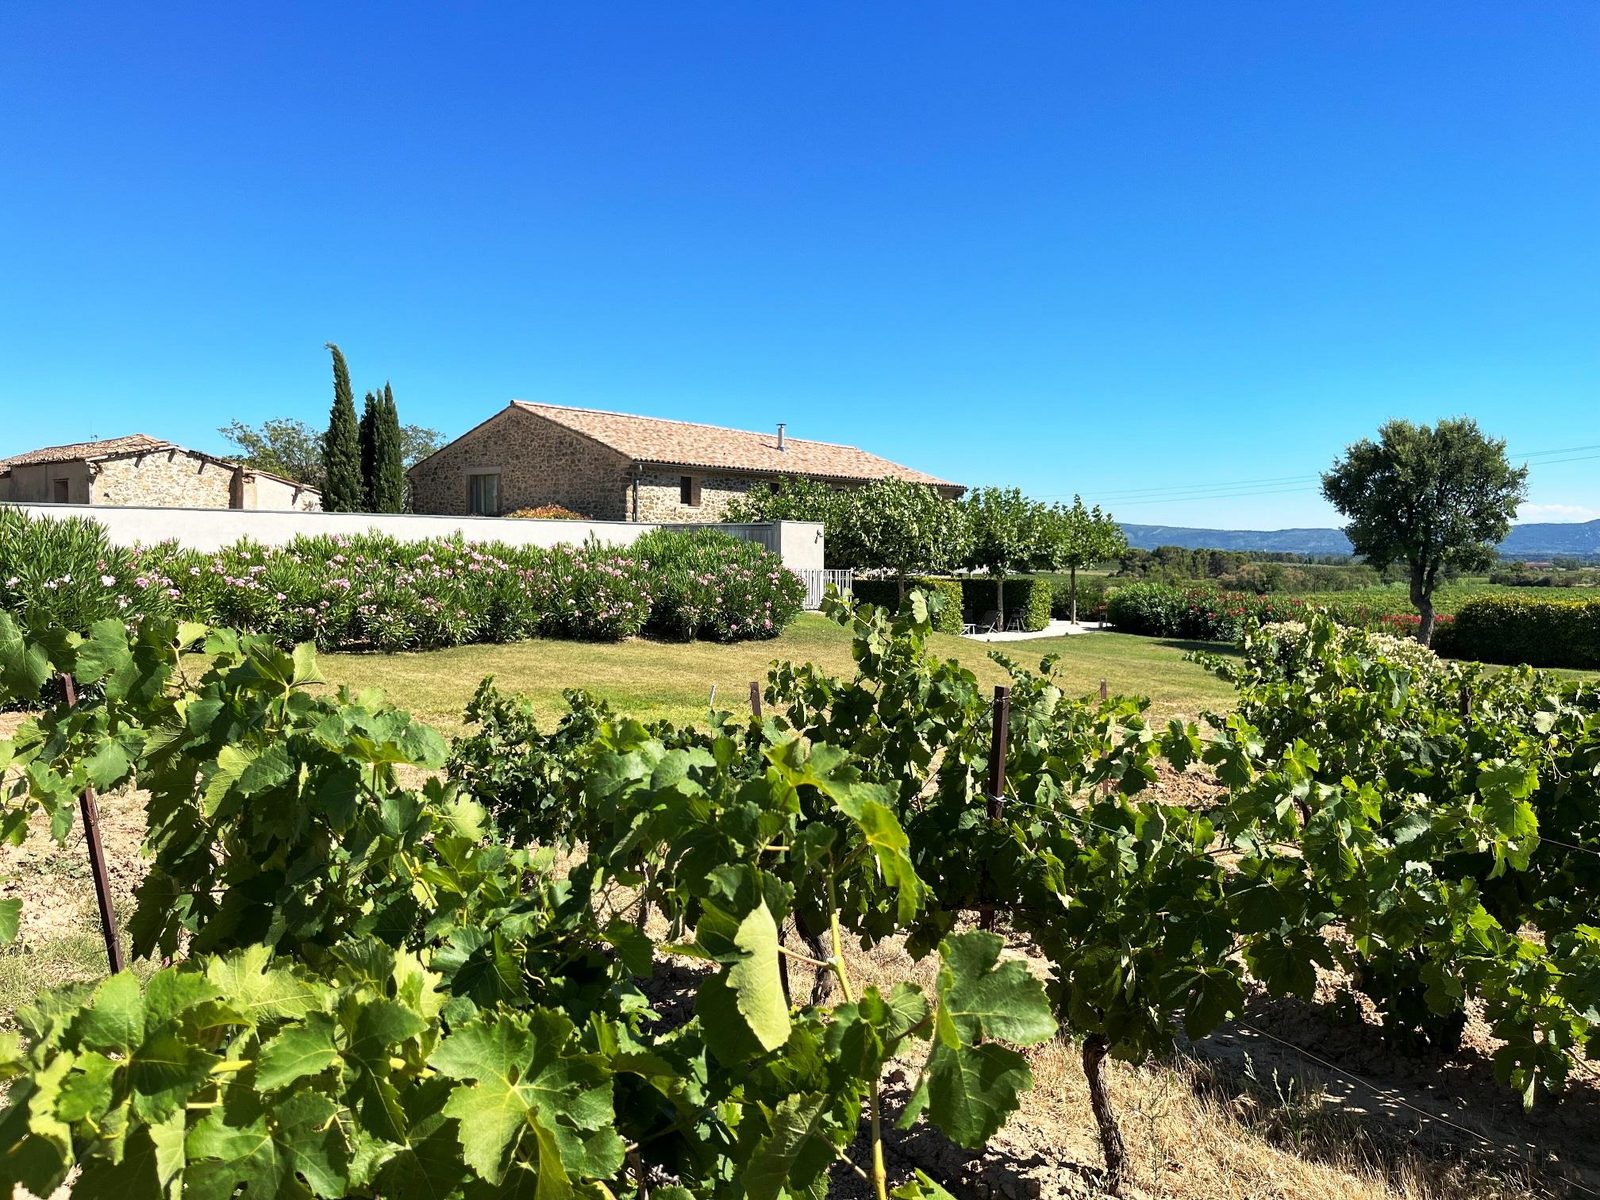 Domaine la Vigne - luxe gîtes in de wijnregio Minervois